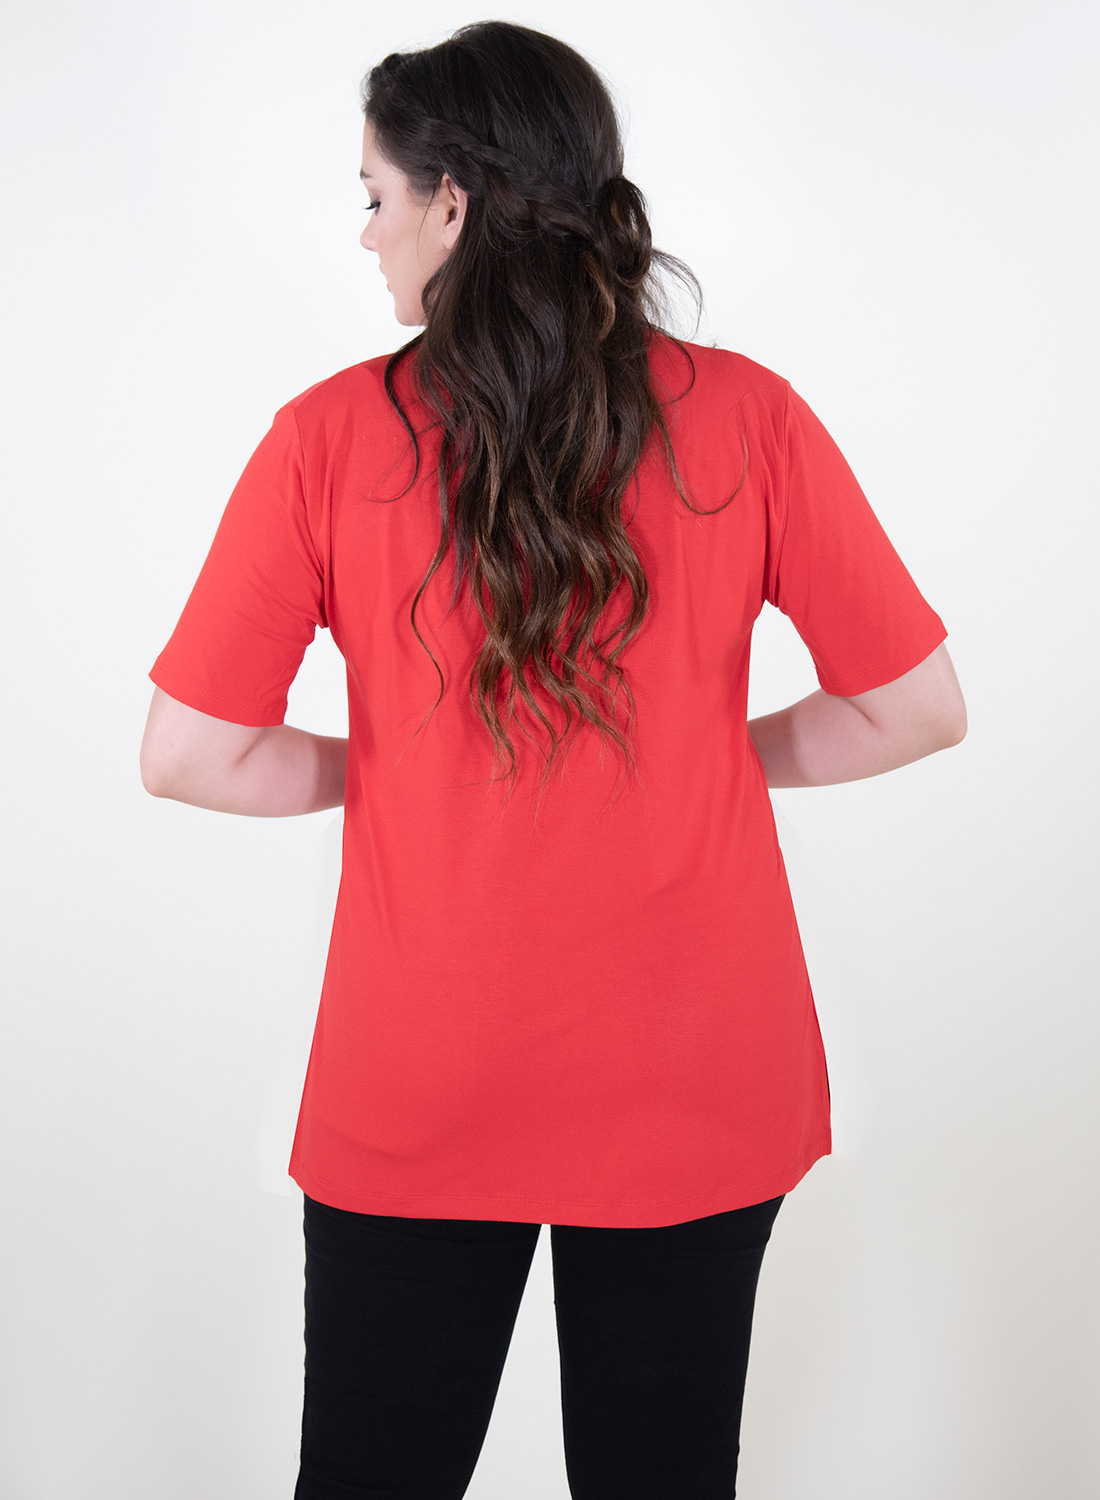 Μονόχρωμη κόκκινη μπλούζα με λεπτομέρειες